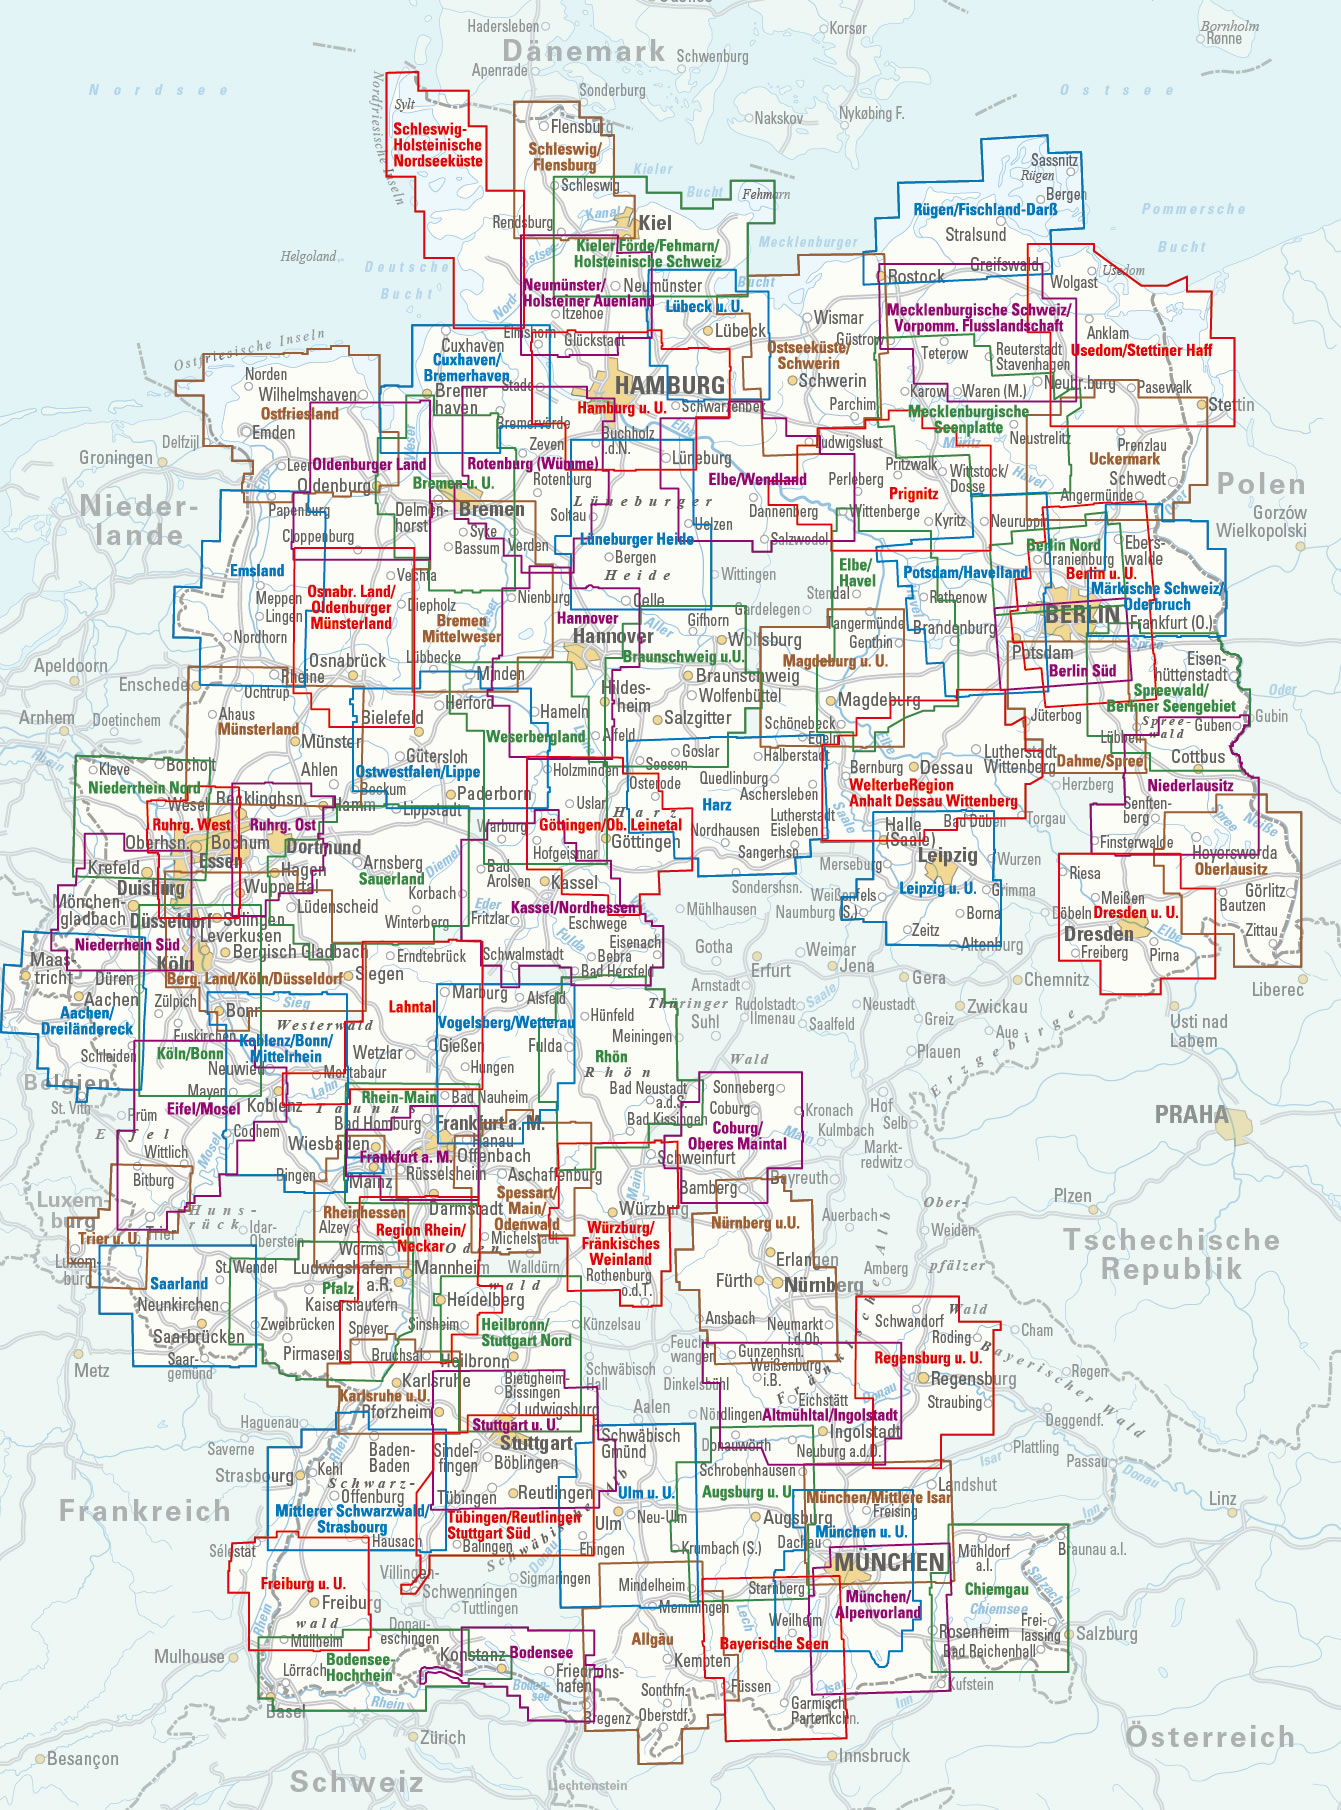 Overview Regionalkarten